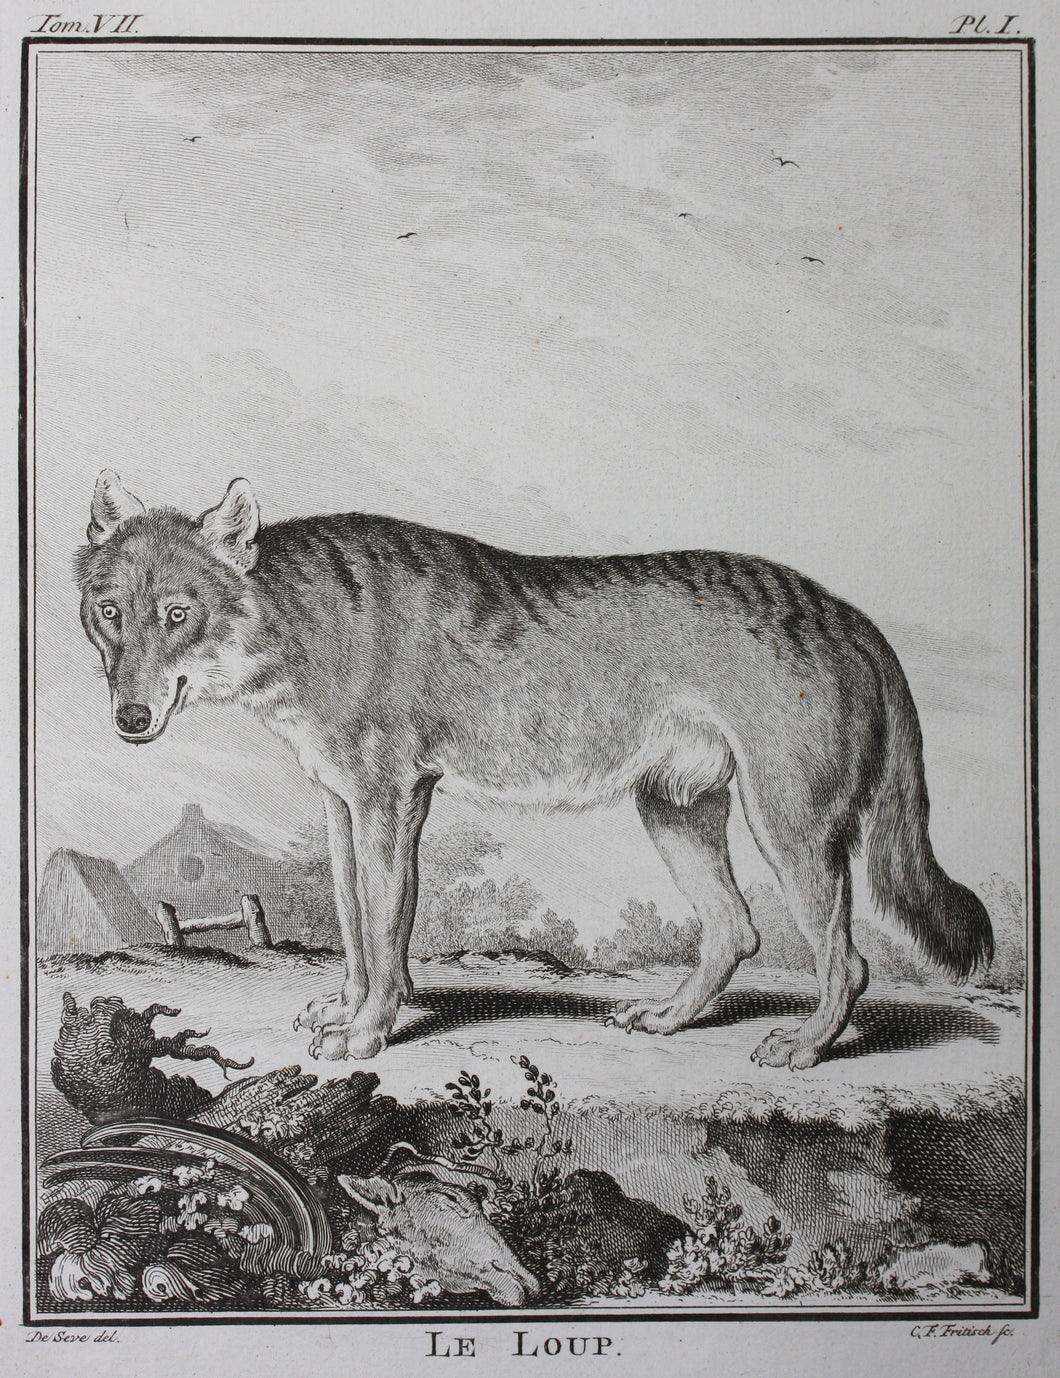 Jacques de Sève, after. Le Loup. Engraved by Christian Friedrich Fritzsch. 1772.